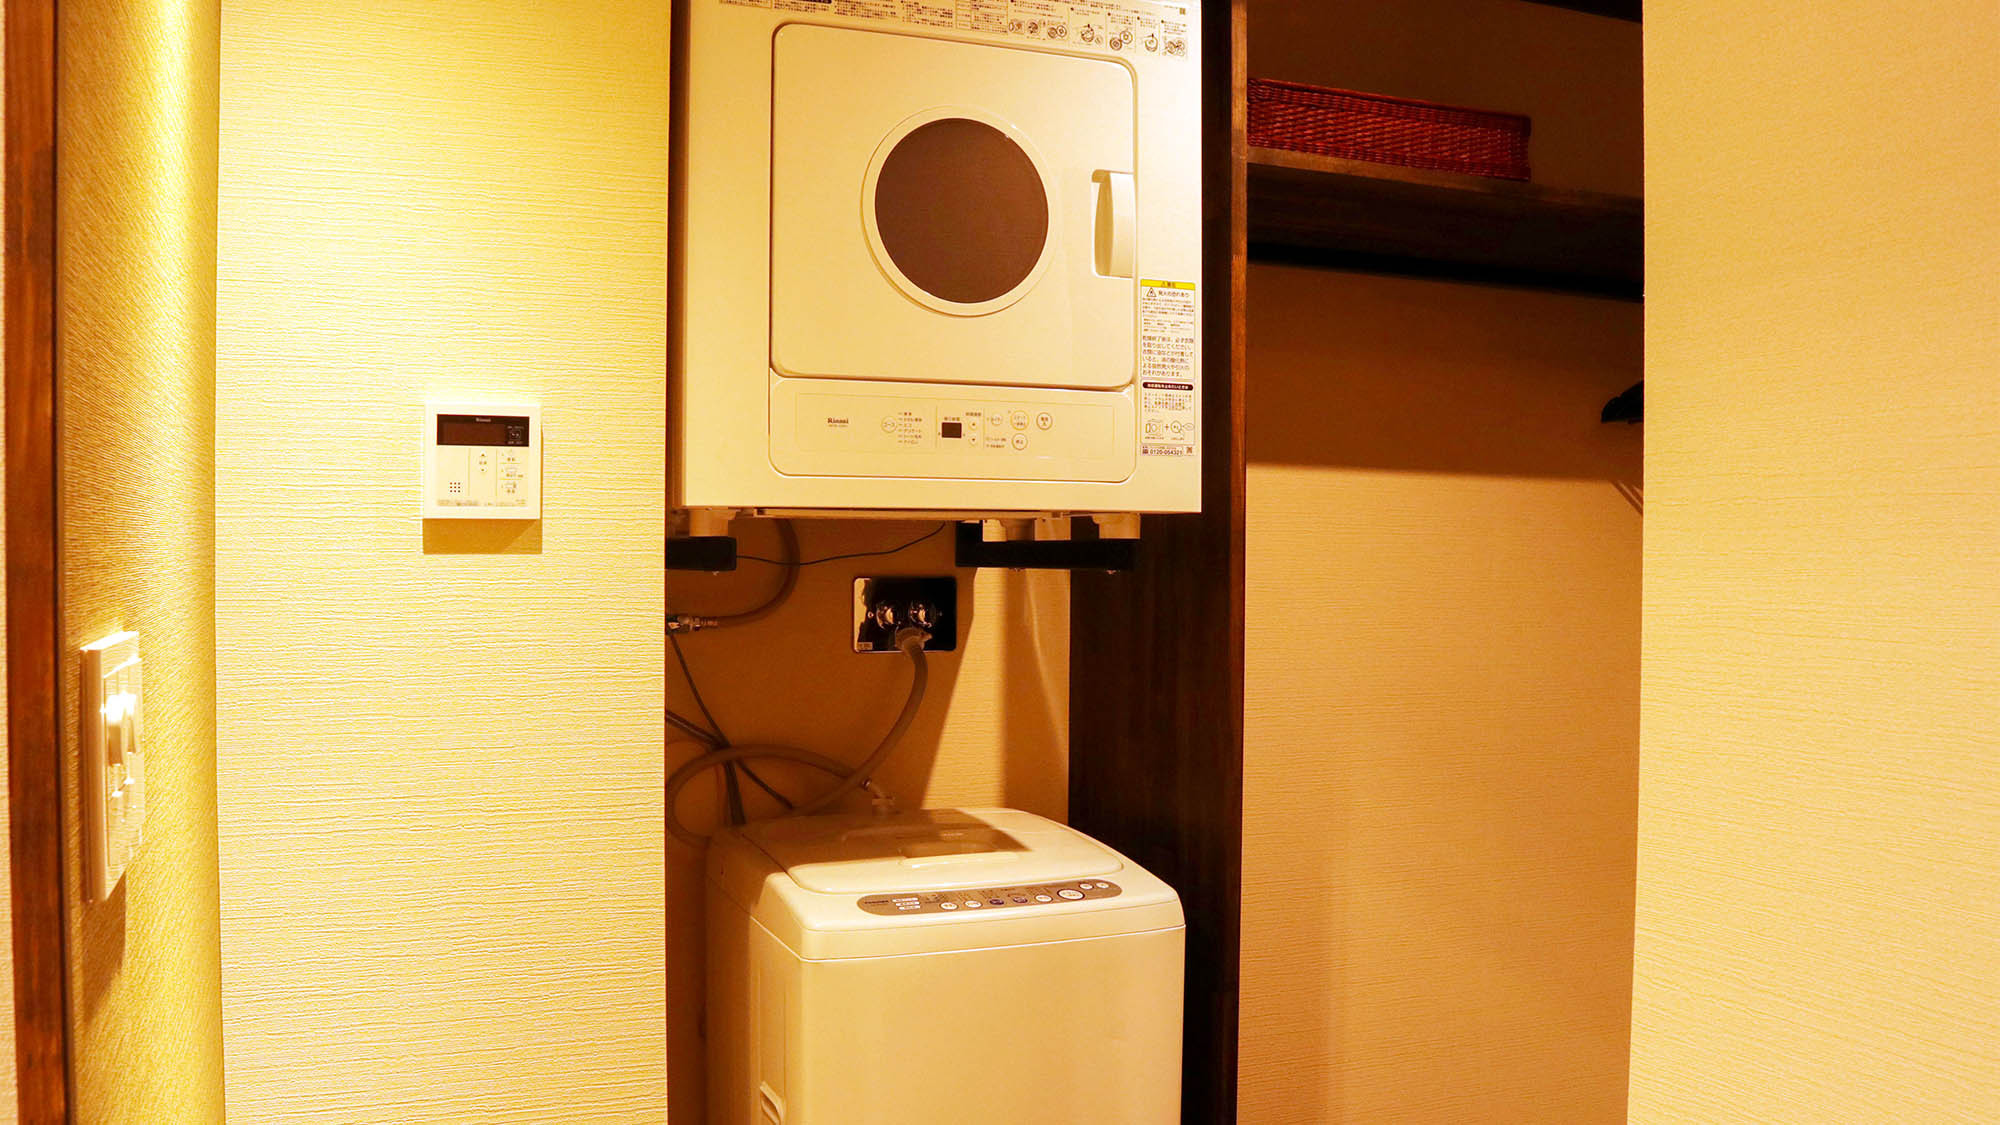 ・Kitzubuehel (301) Laundry ランドリー連泊に便利な洗濯・乾燥機付き